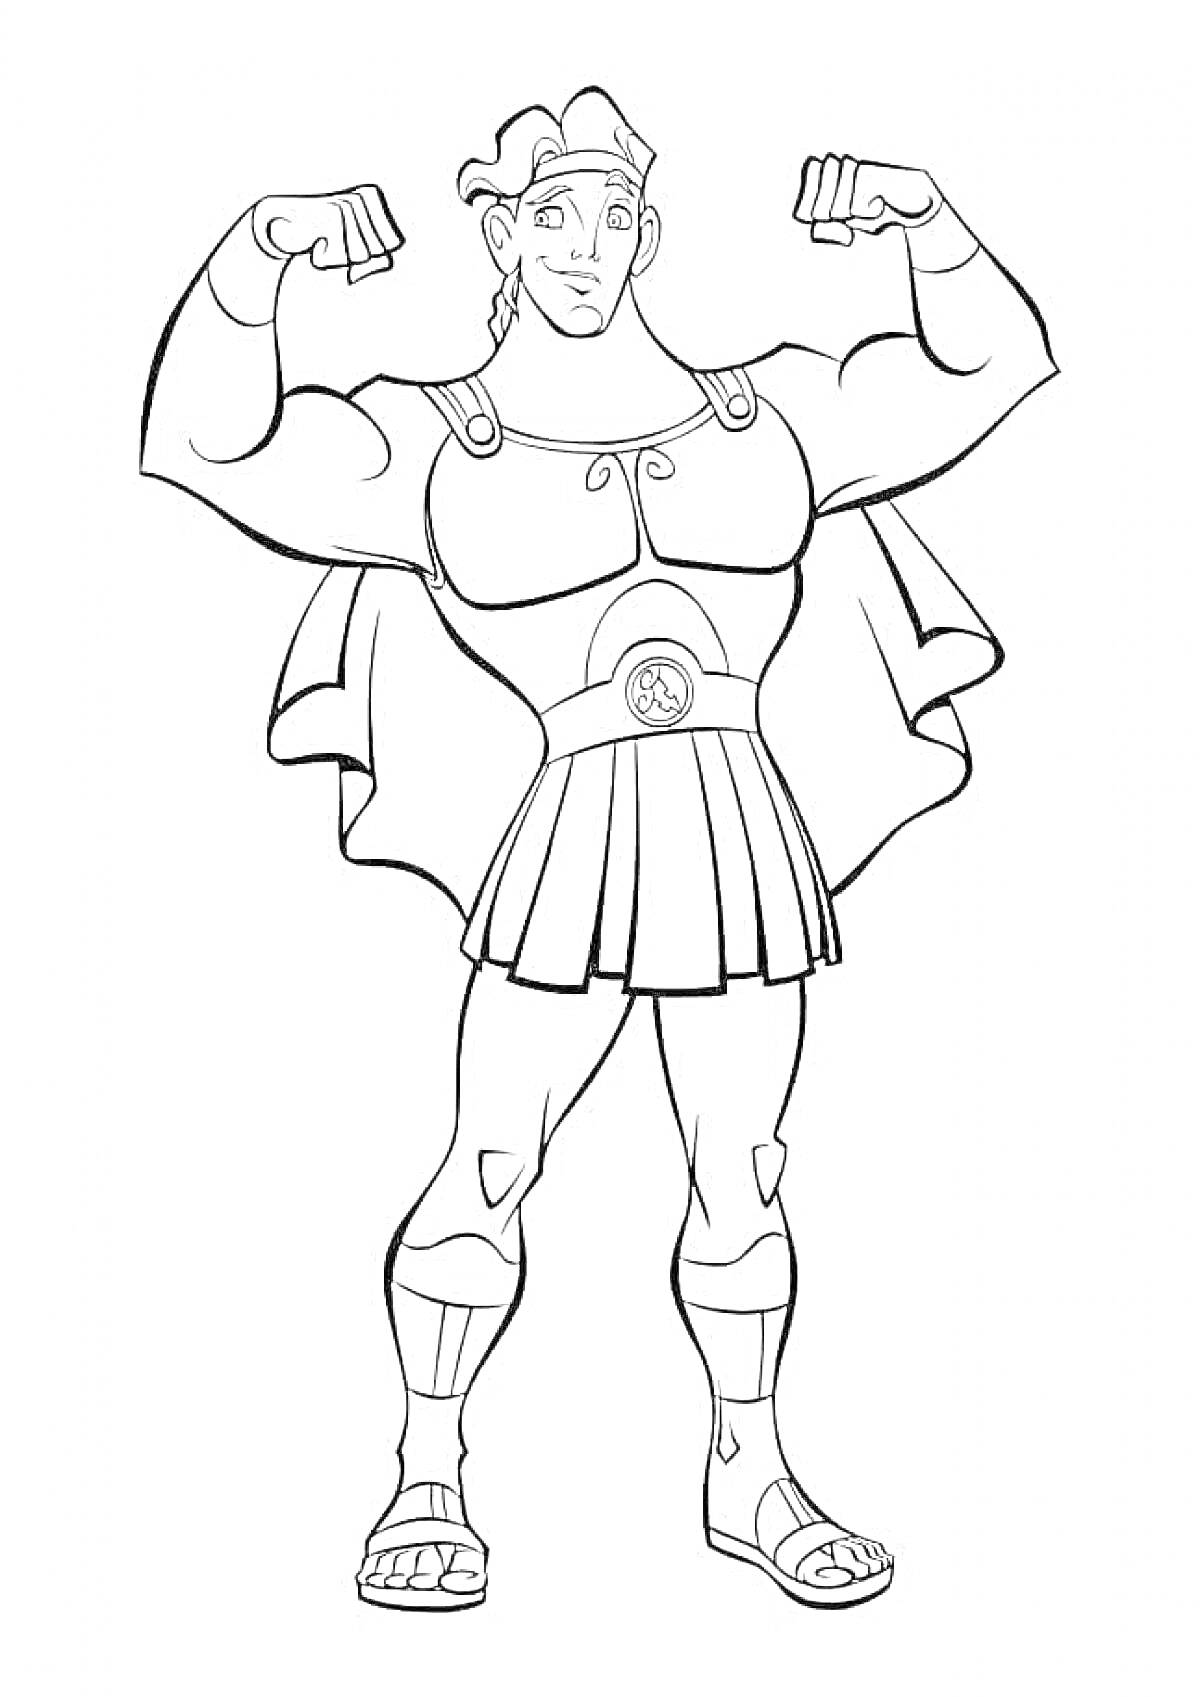 Геракл в шлеме и доспехах, демонстрирующий силу, с поднятыми руками и в сандалиях